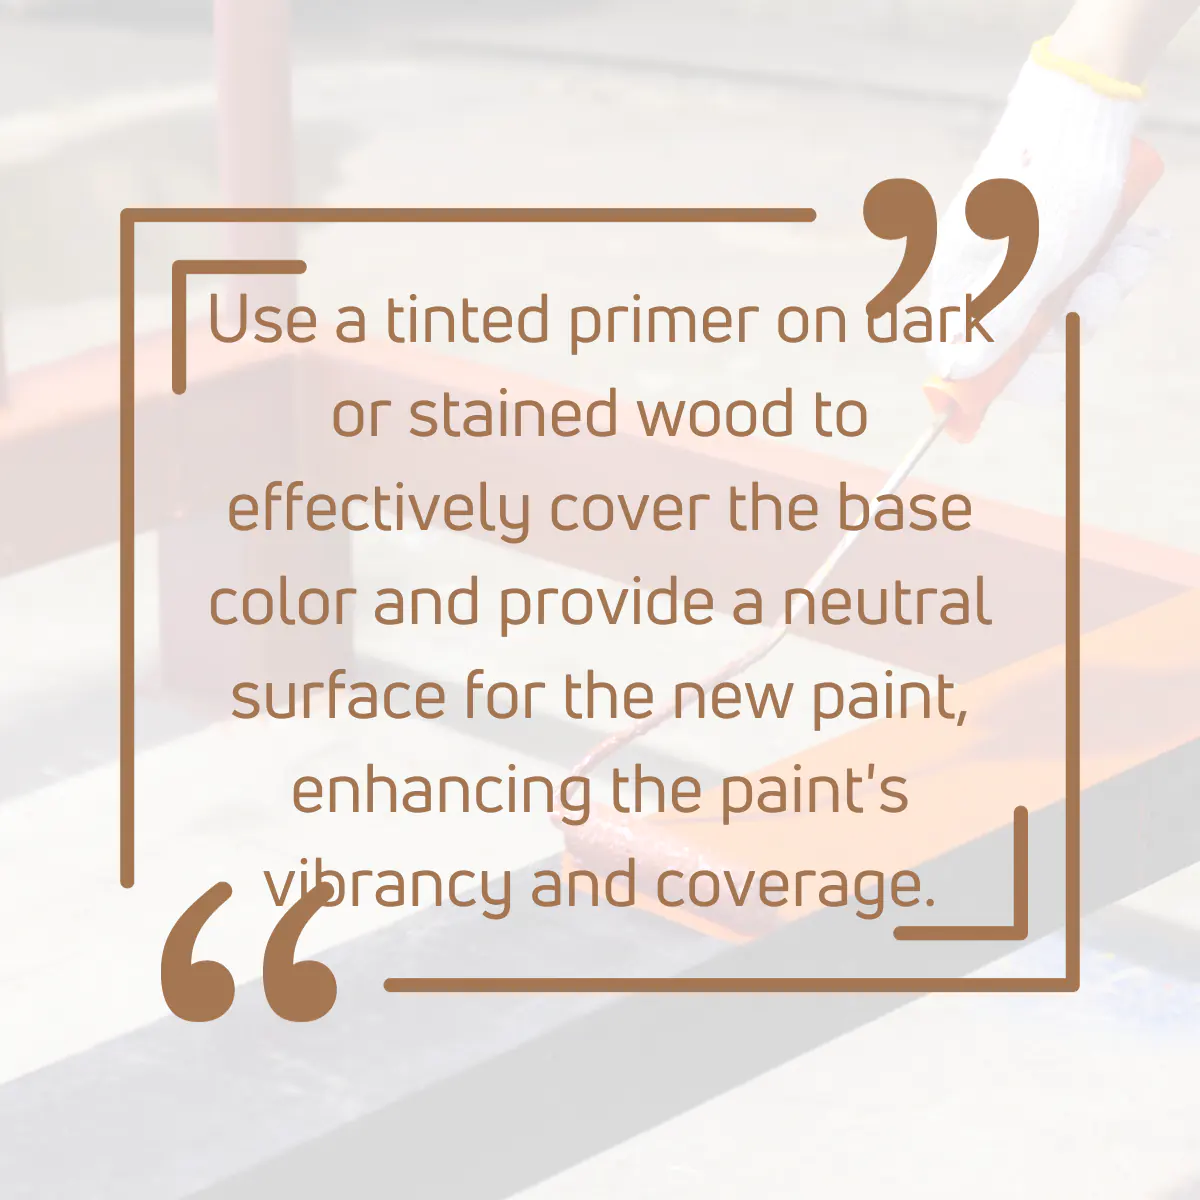 Tip for applying primer coat on wood